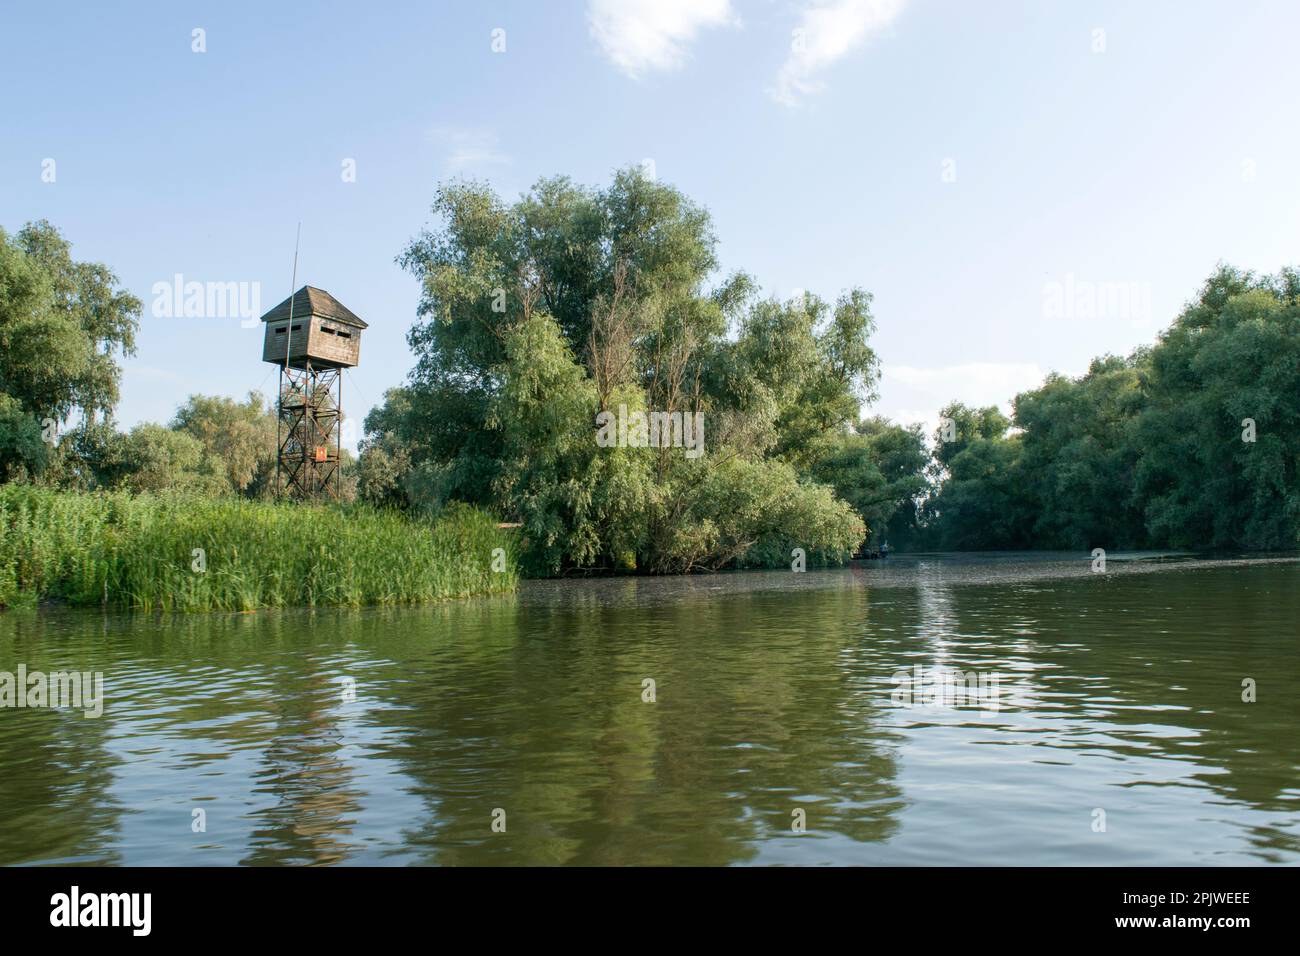 Natura selvaggia e acquatica nell'ecosistema del Delta del Danubio: Una capanna per l'osservazione degli uccelli, un rifugio, utilizzato per osservare la fauna selvatica, in particolare gli uccelli. Foto Stock